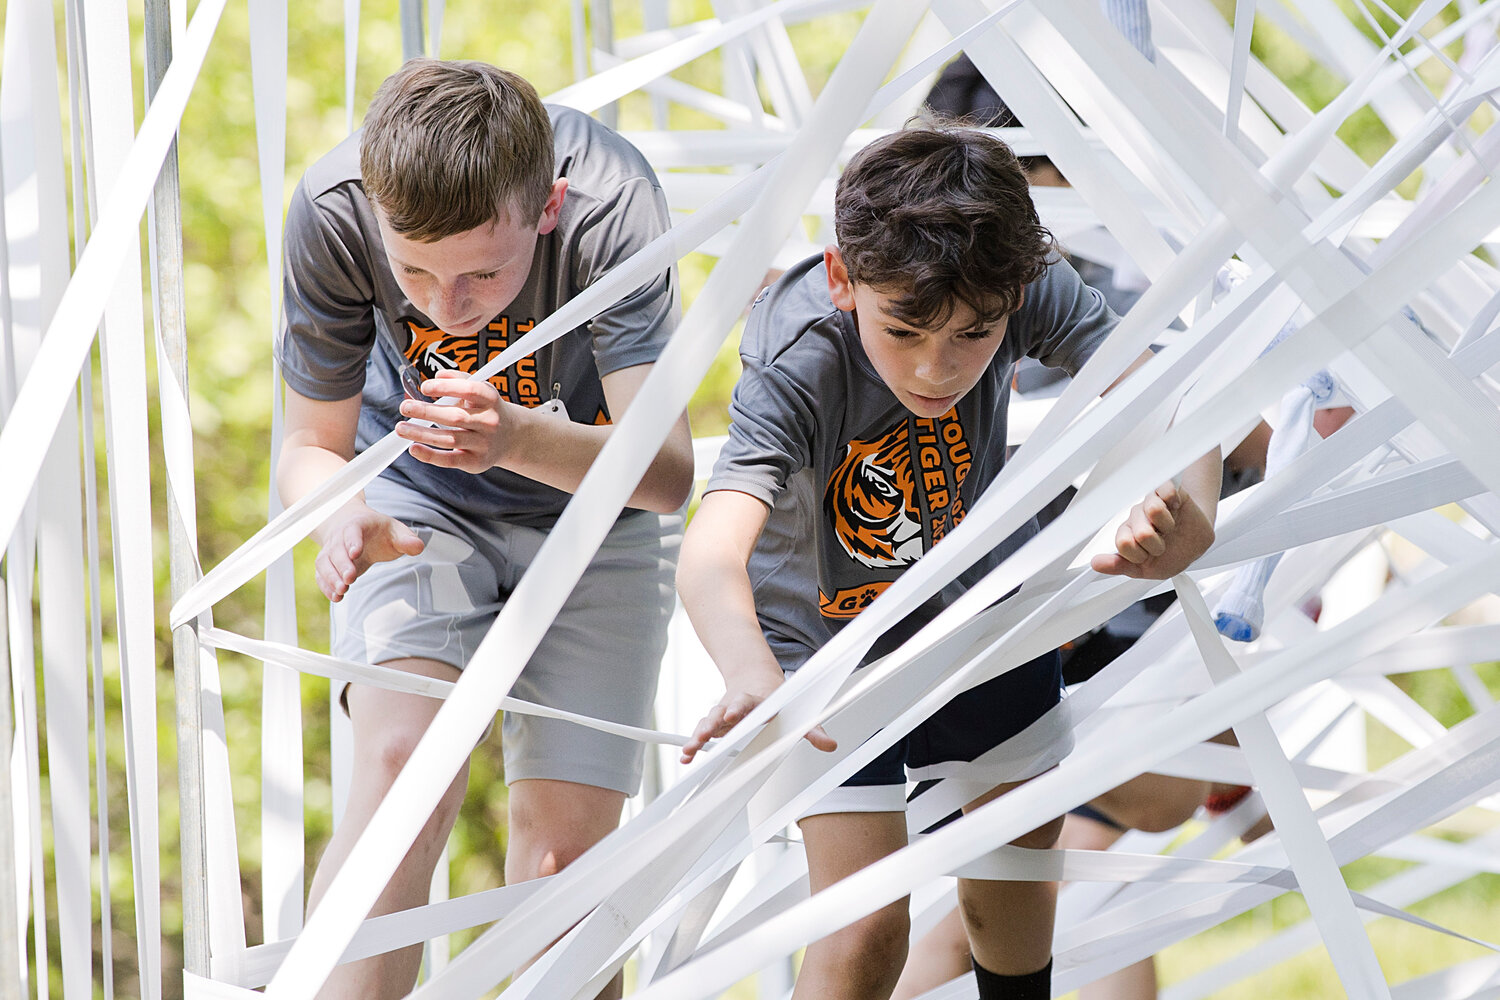 "Tough Tiger" participants make their way through a webbed maze.